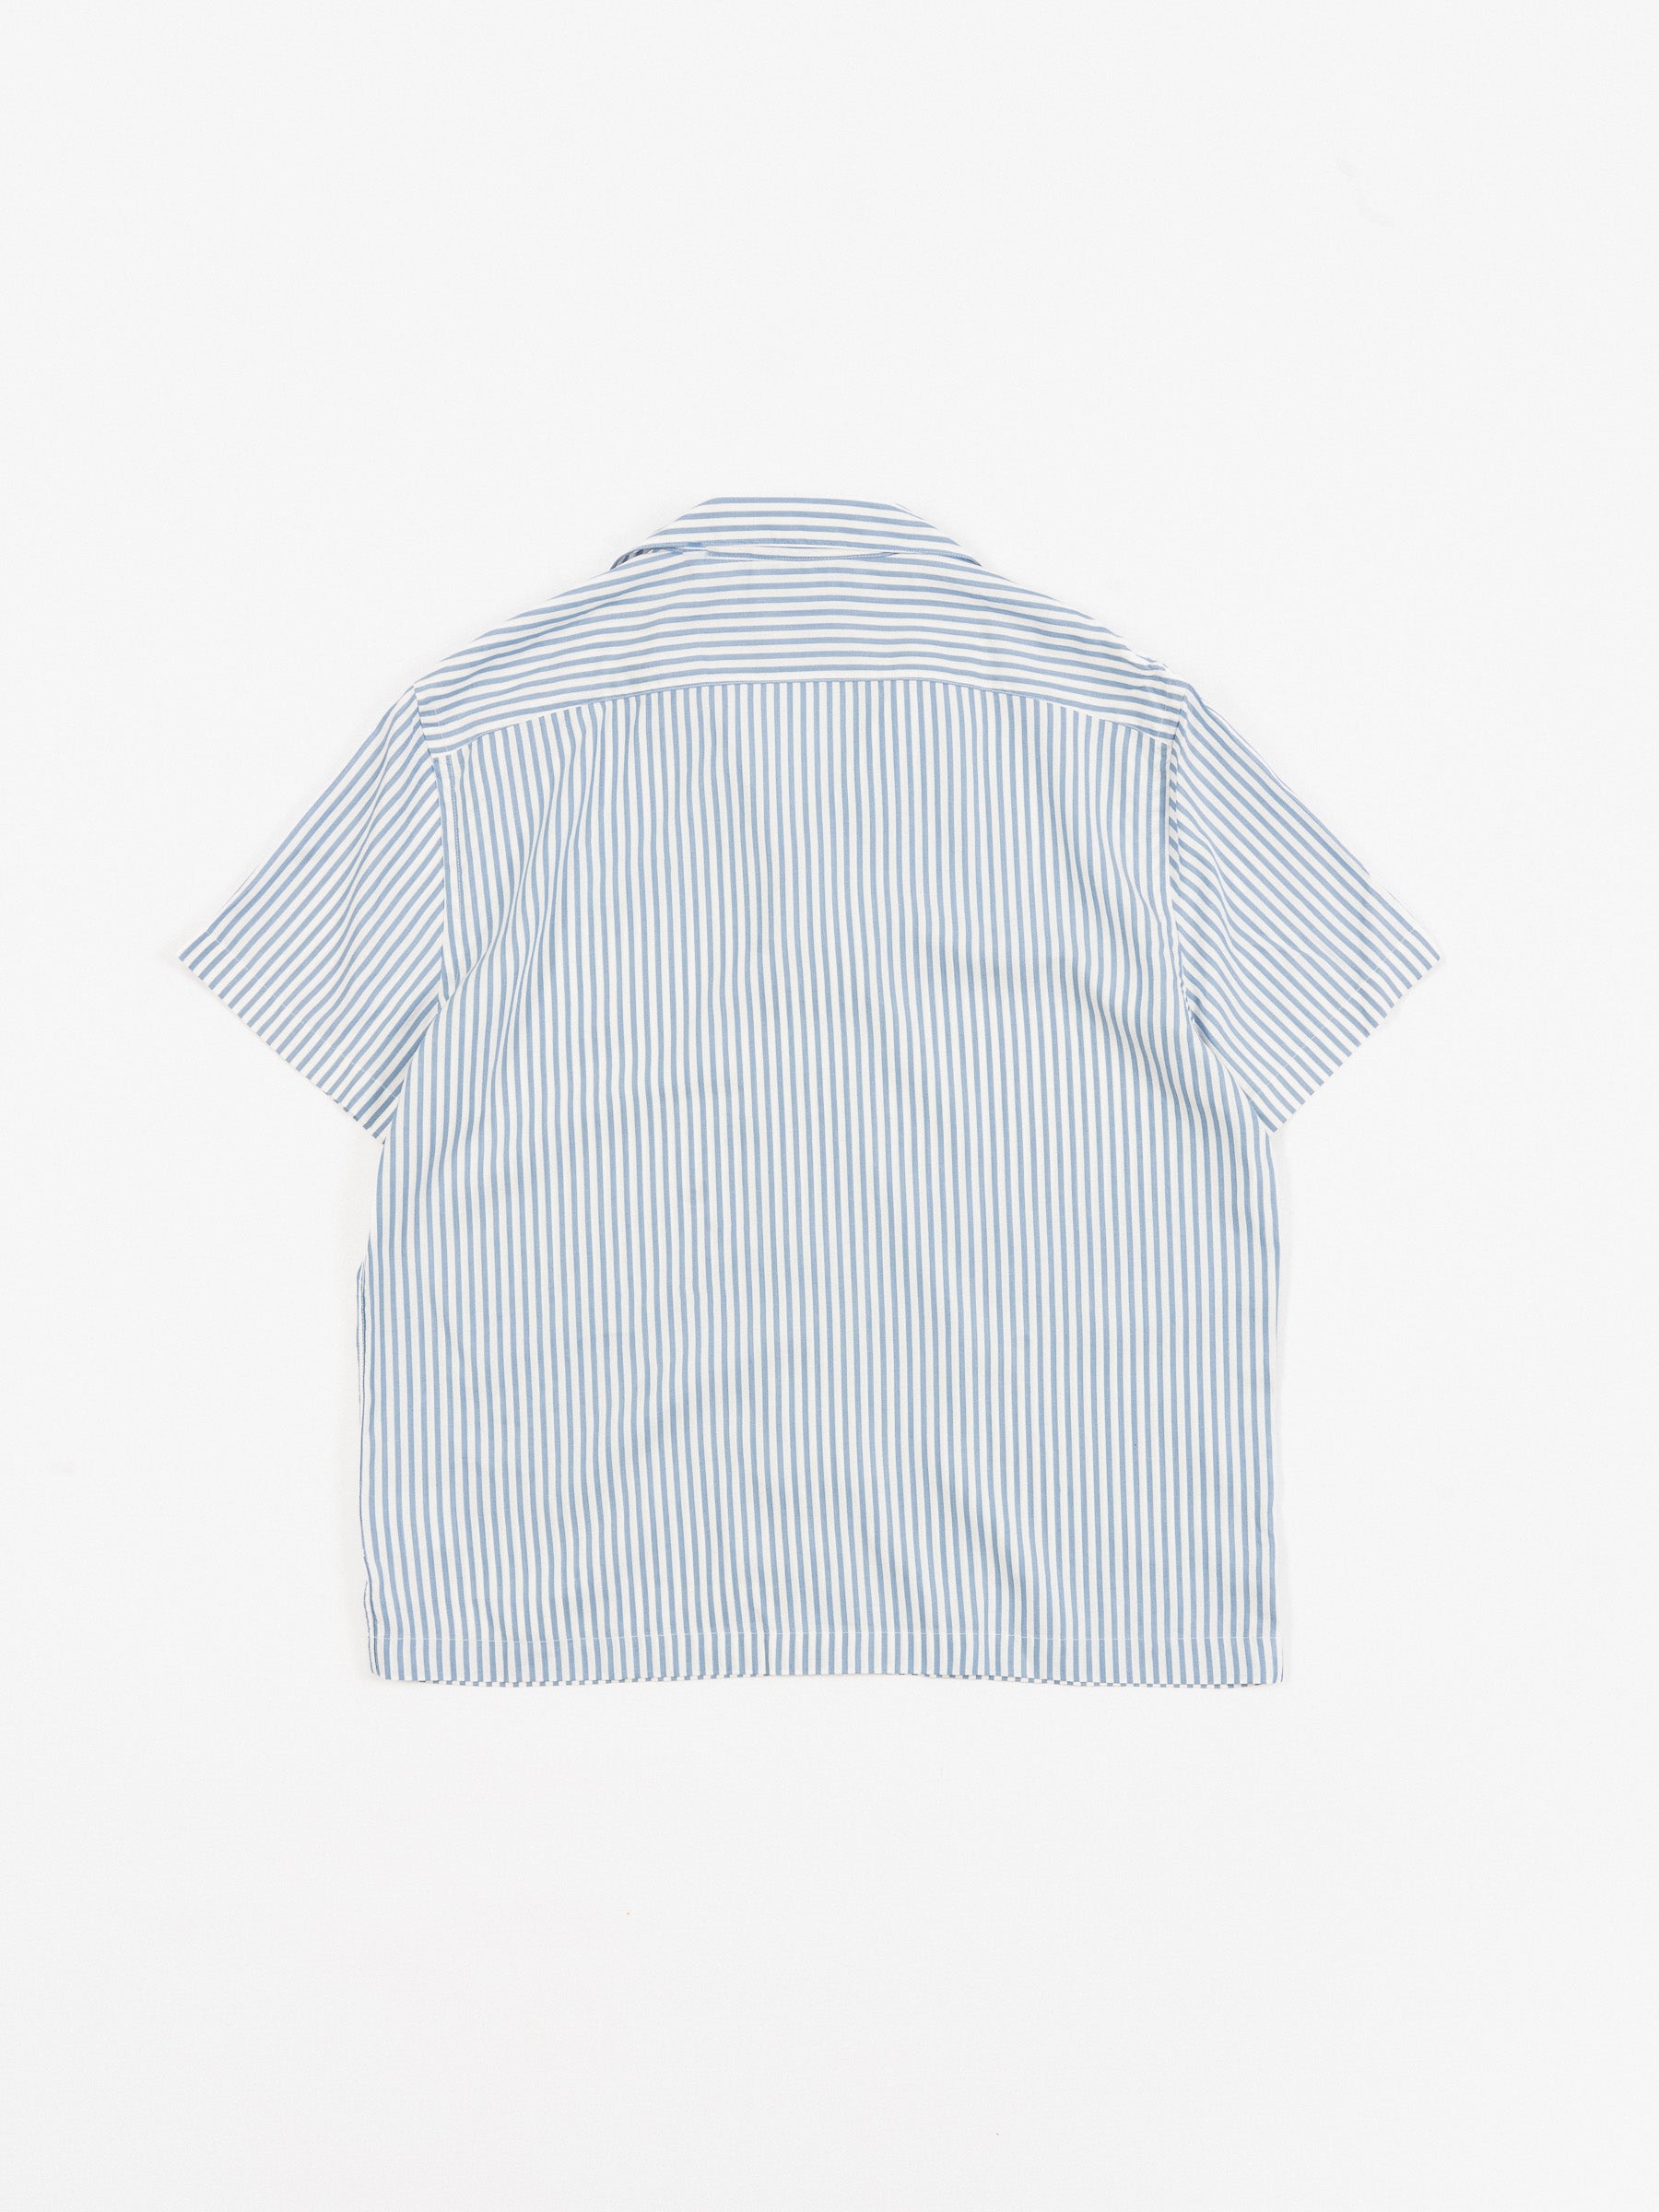 Christophe Striped Short Sleeve Shirt Blue/White